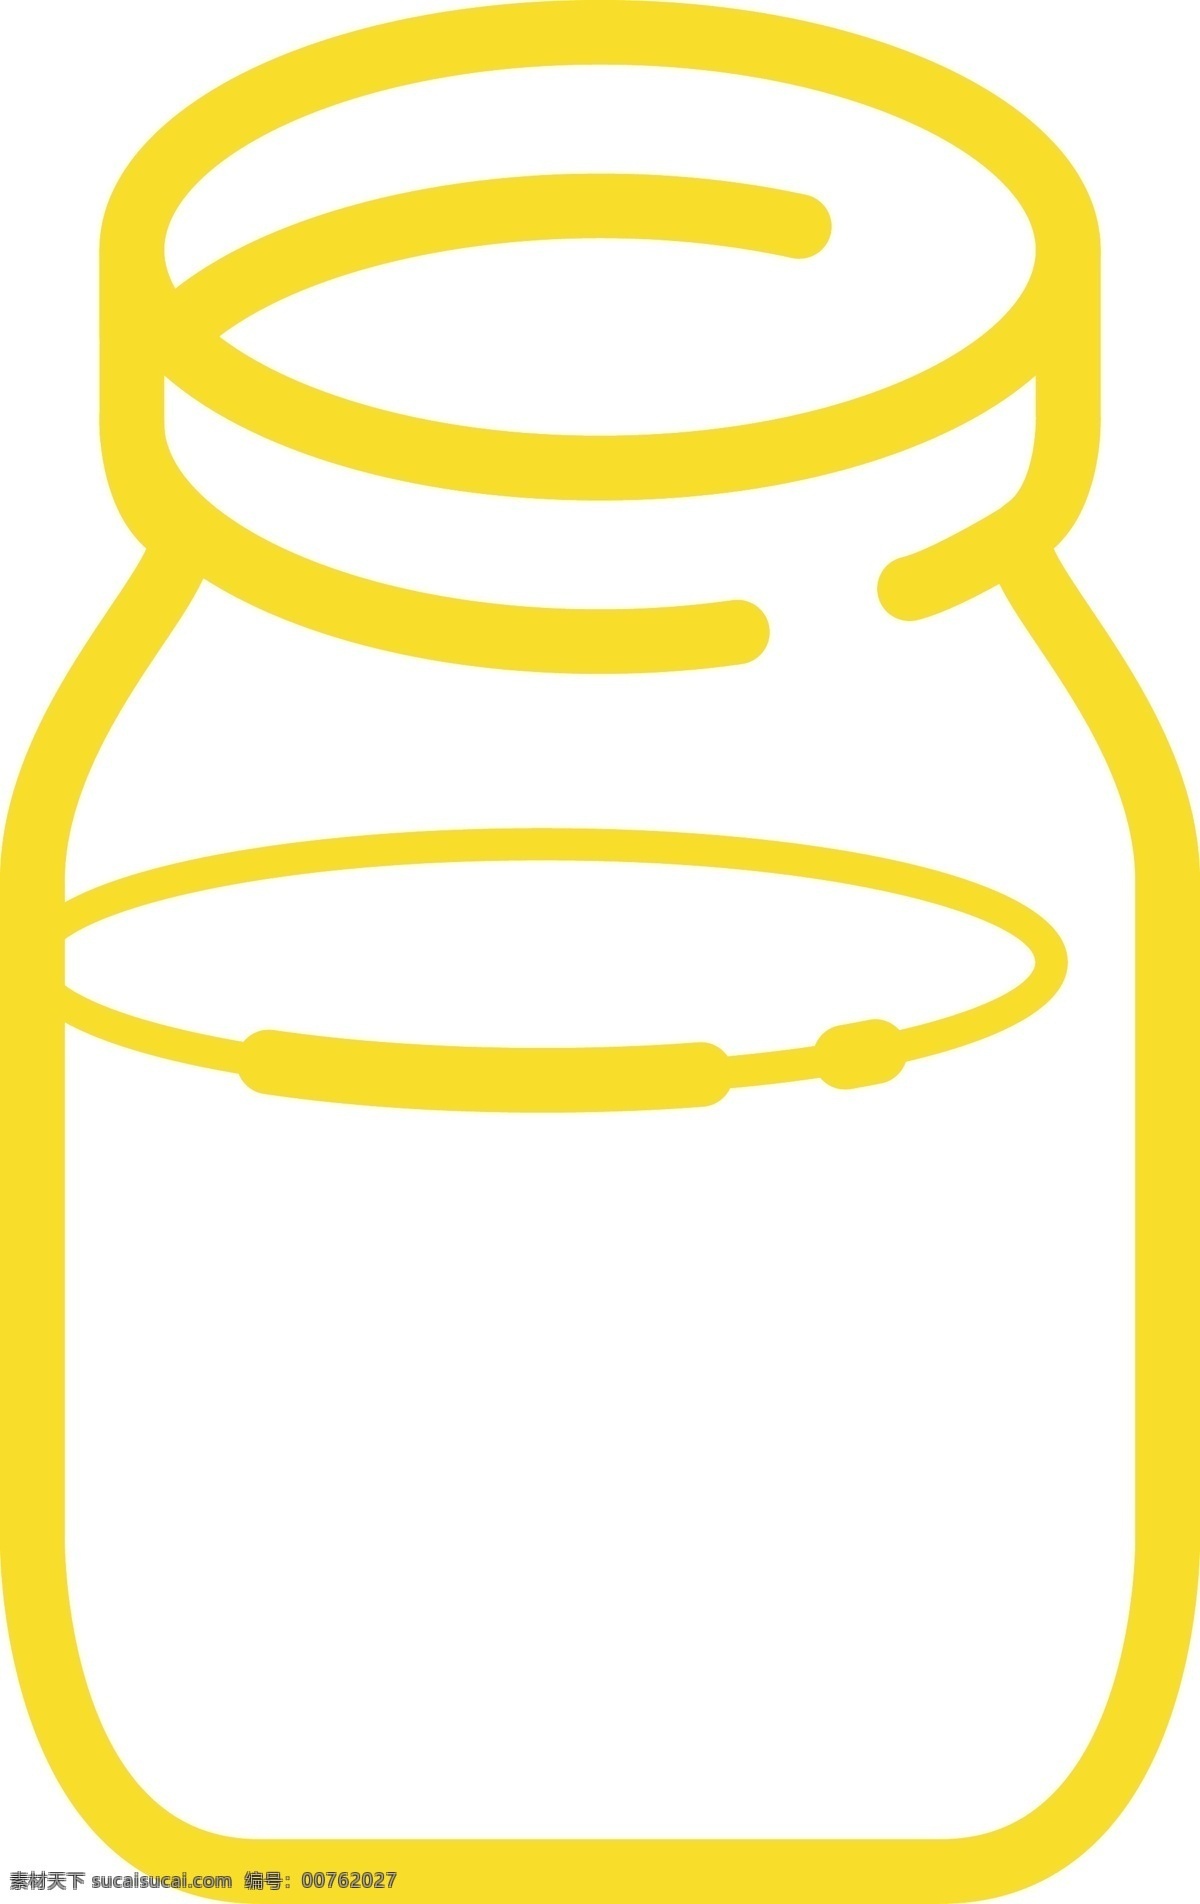 黄色 水壶 免 抠 图 水壶杯子 ui应用图标 网页图标 电脑图标 卡通图案 卡通插画 杯子 生活杯子 免抠图